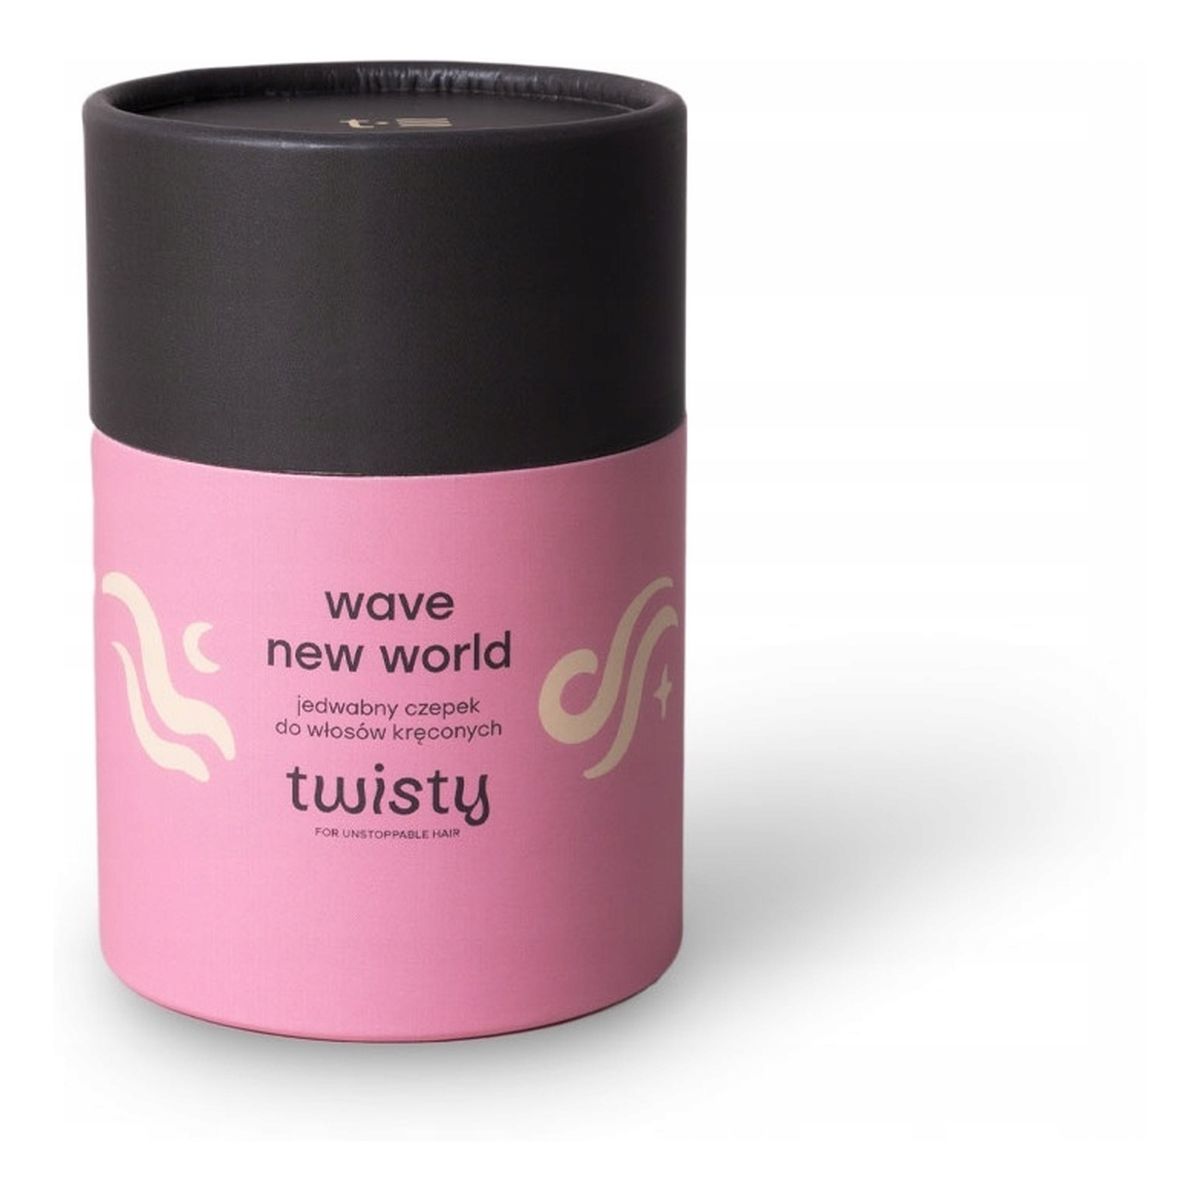 Twisty Wave new world jedwabny czepek do włosów kręconych